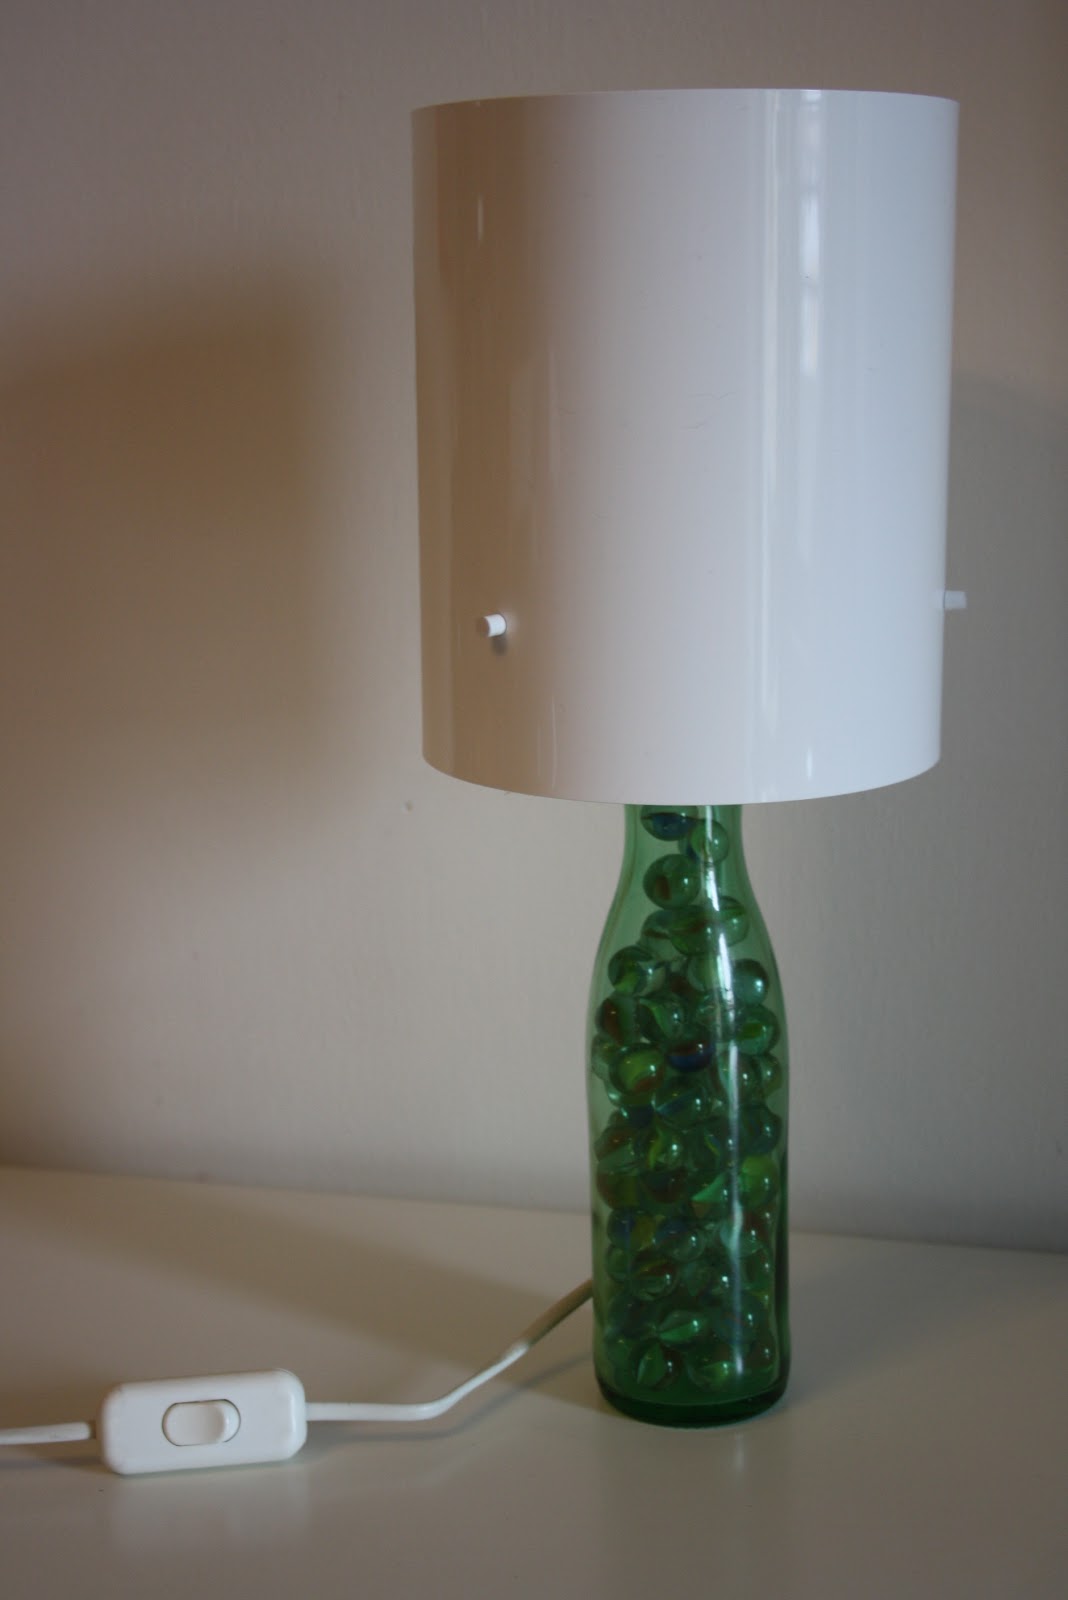 Il baule delle idee: Da una bottiglia a una lampada!